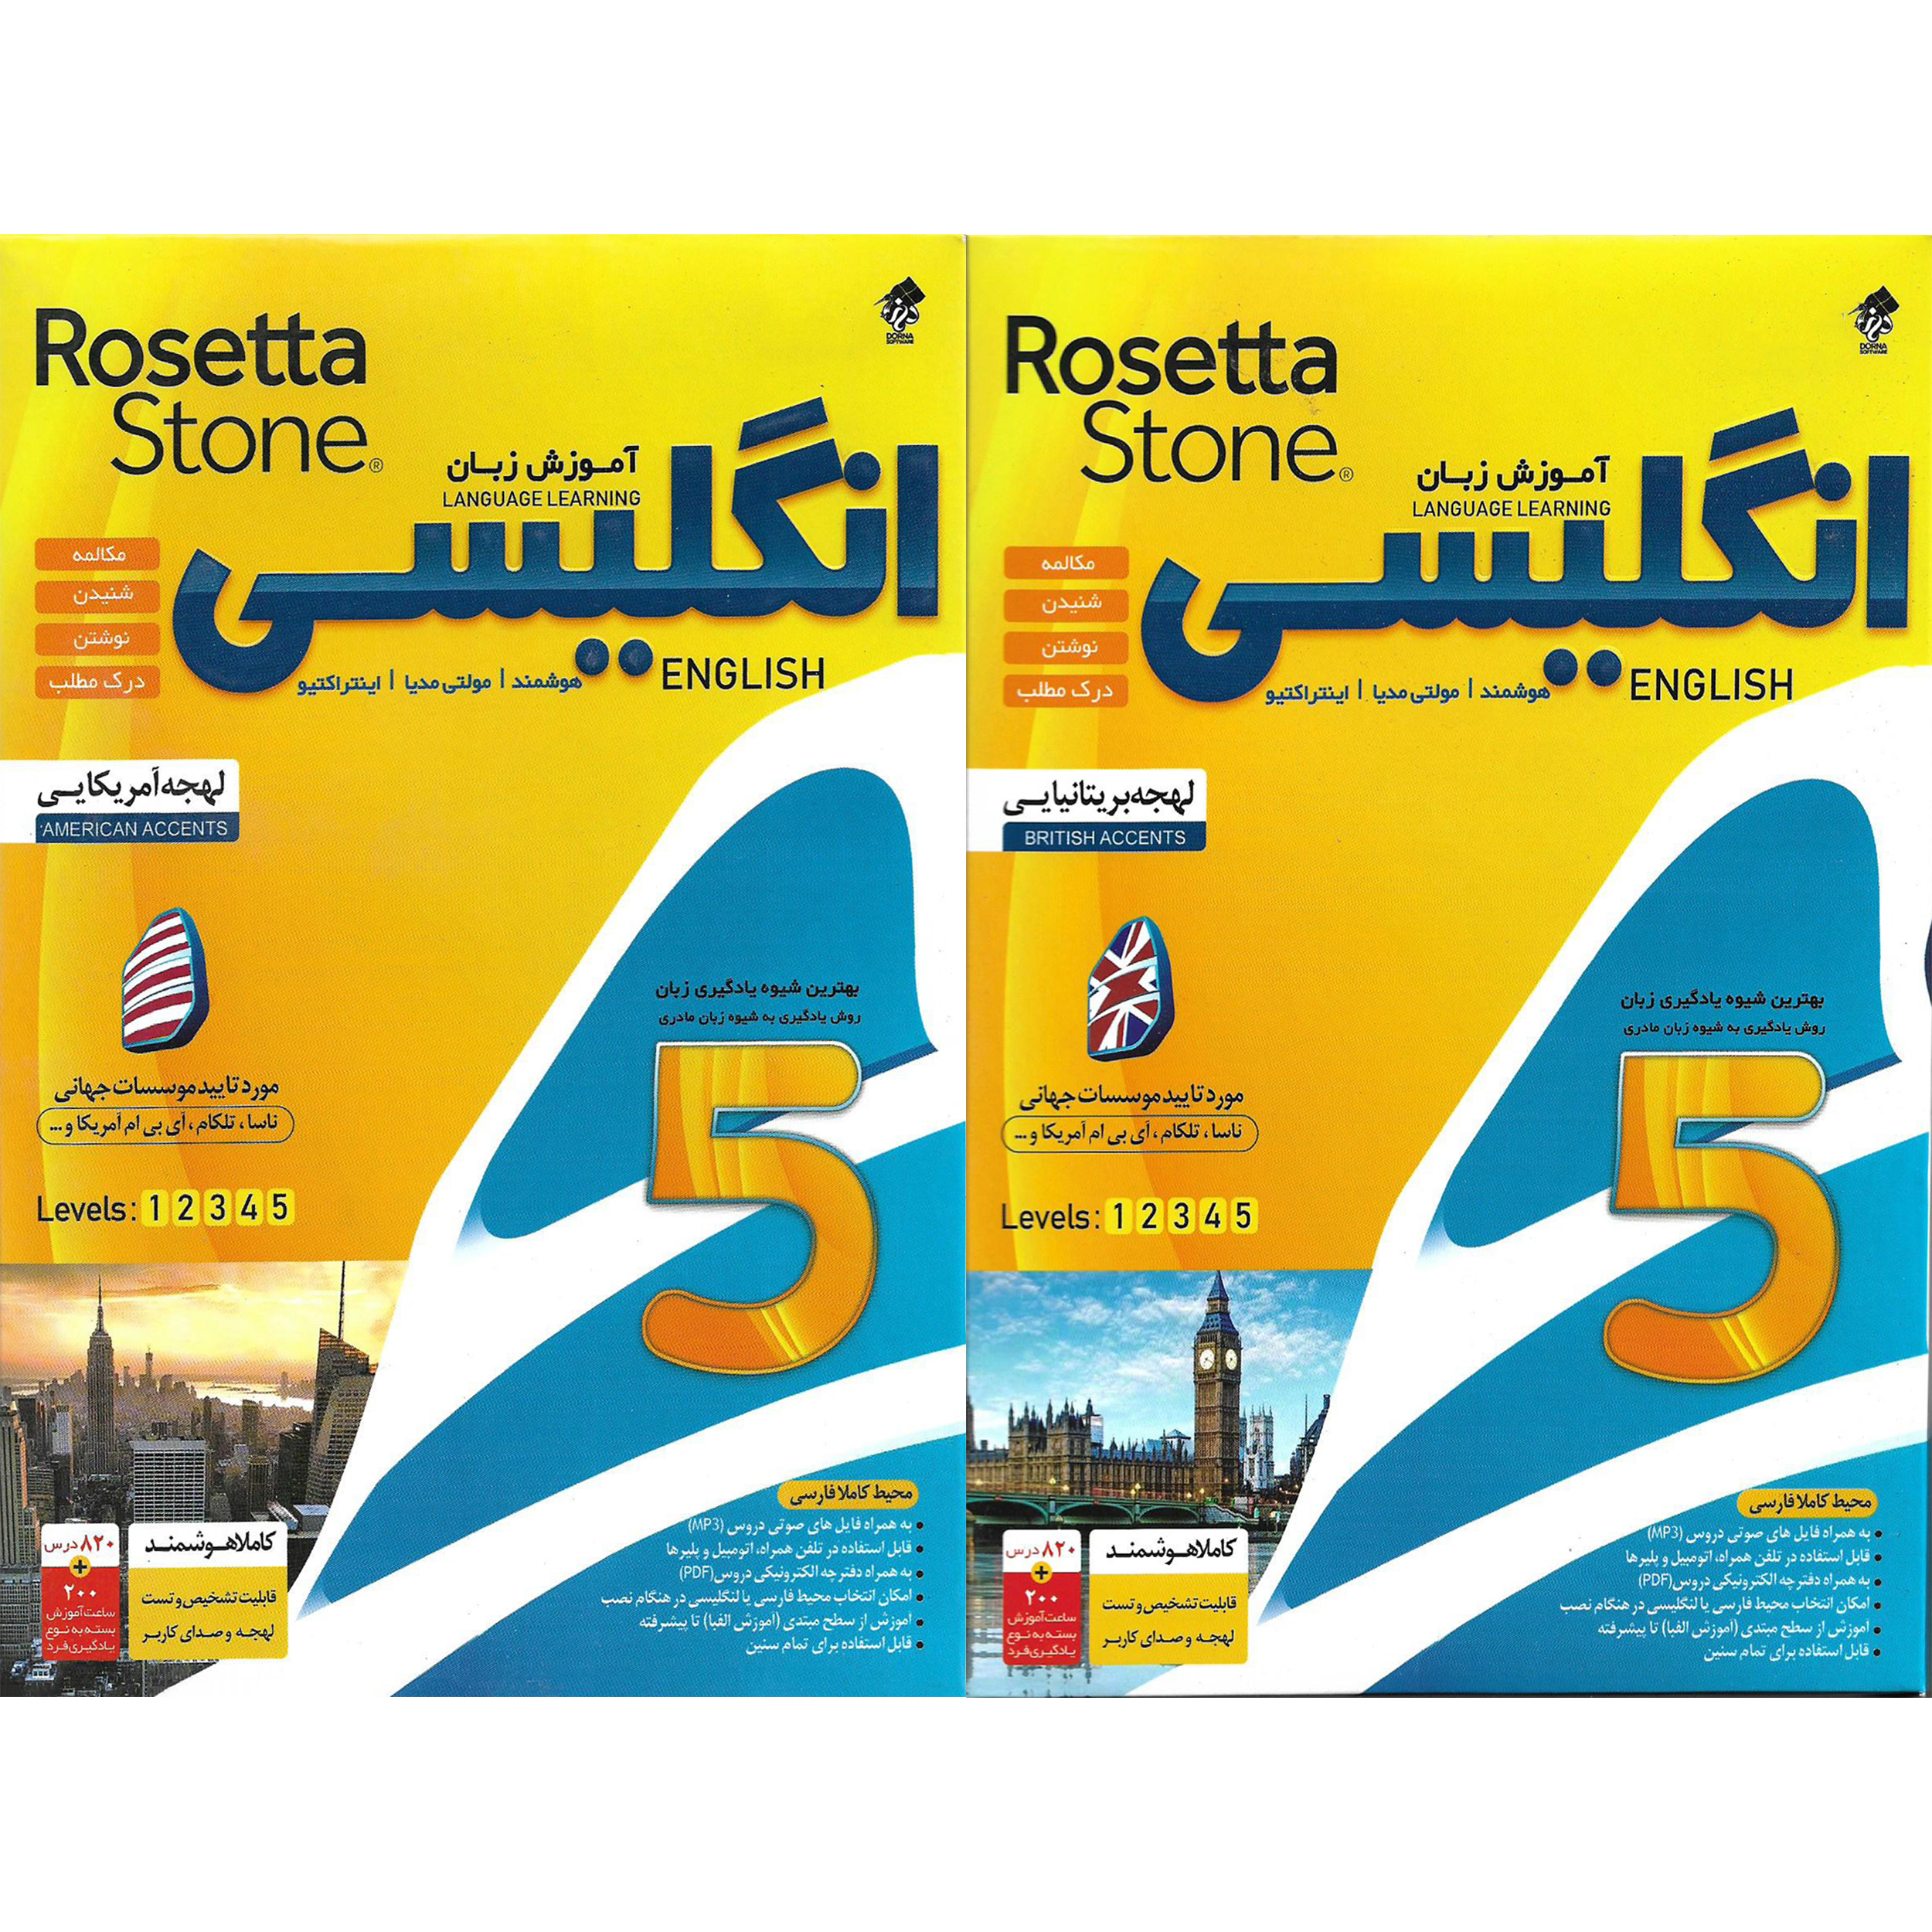 نرم افزار آموزش زبان انگلیسی Rosetta Stone لهجه بریتانیایی نشر درنا به همراه نرم افزار آموزش زبان انگلیسی Rosetta Stone لهجه امریکایی نشر درنا